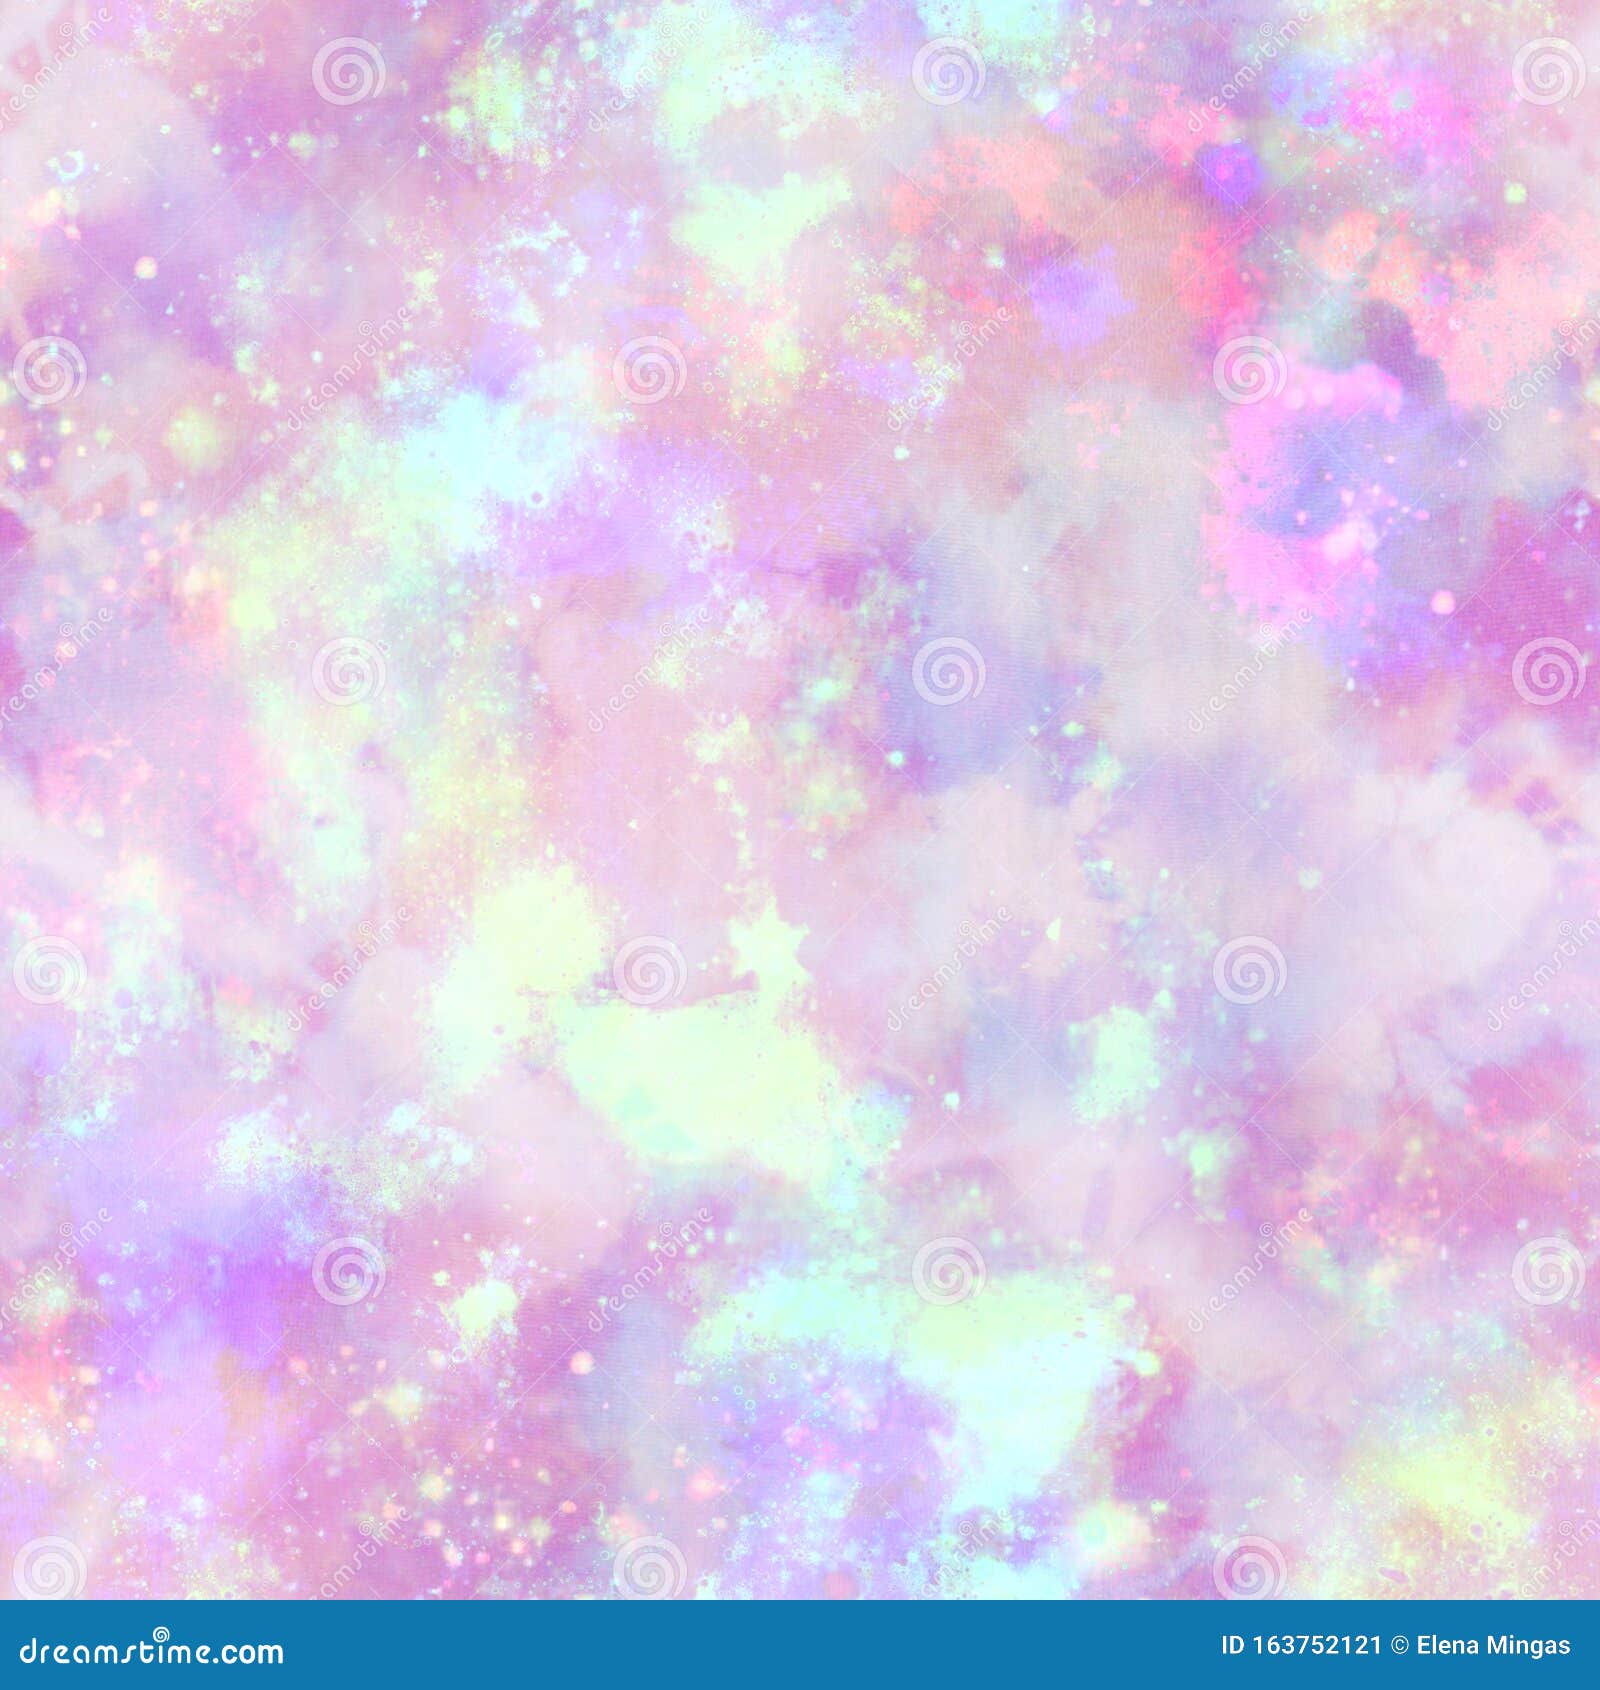 Espace D Explosion De La Galaxie De Unicorne Imprimer Dans La Couleur Pastel Illustration Stock Illustration Du Vert Lineaire